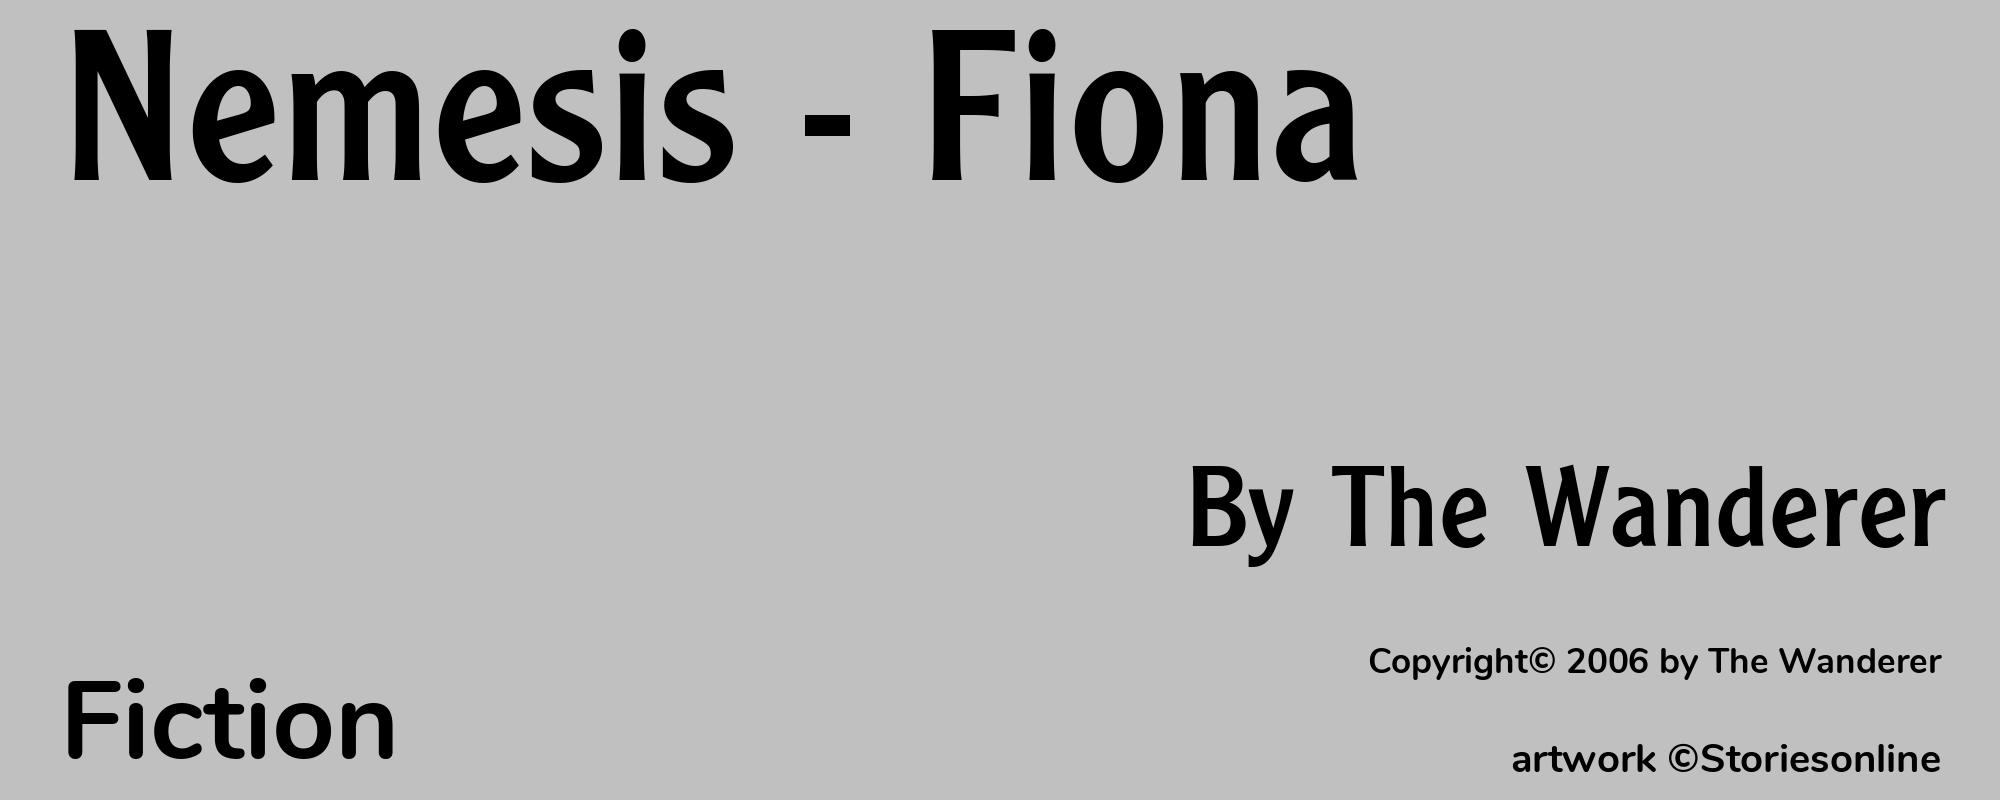 Nemesis - Fiona - Cover